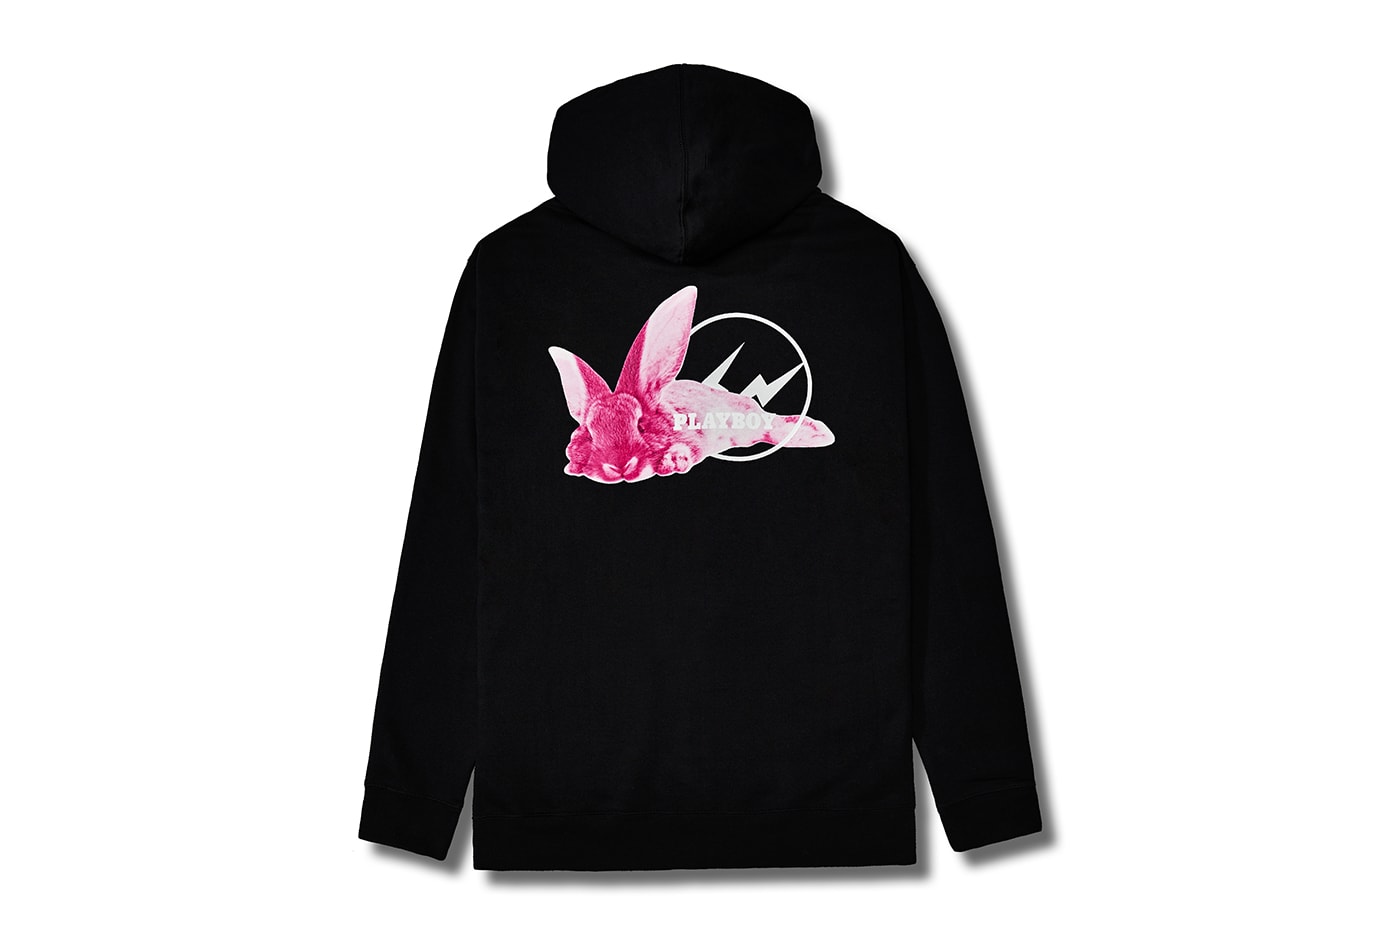 フラグメント x プレイボーイのコラボコレクションが登場 fragment design Meets Playboy Labs Collection Release Info Hoodie T shirt Hiroshi Fujiwara Buy Price Black White